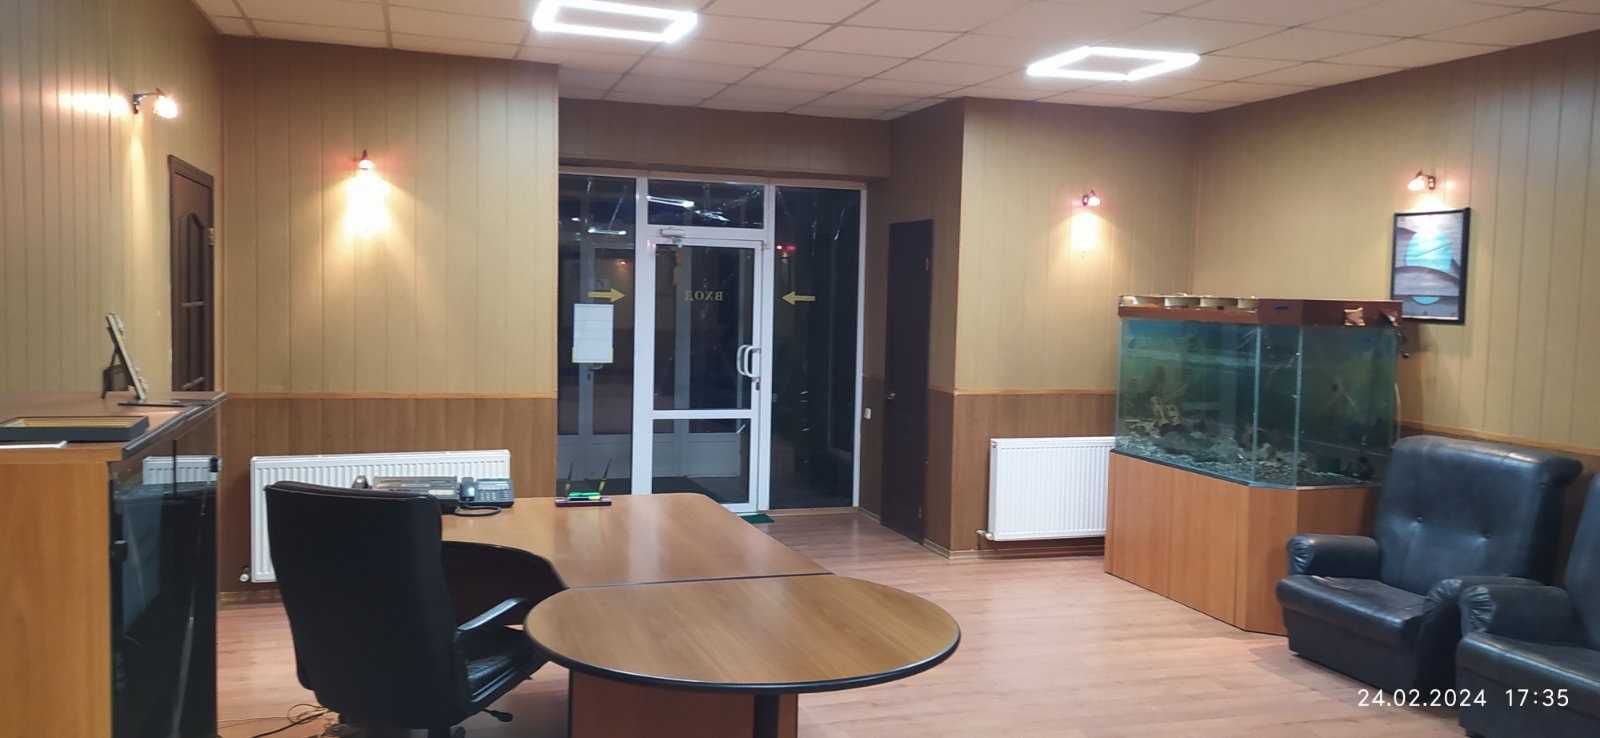 Продам офис в центре Славянска